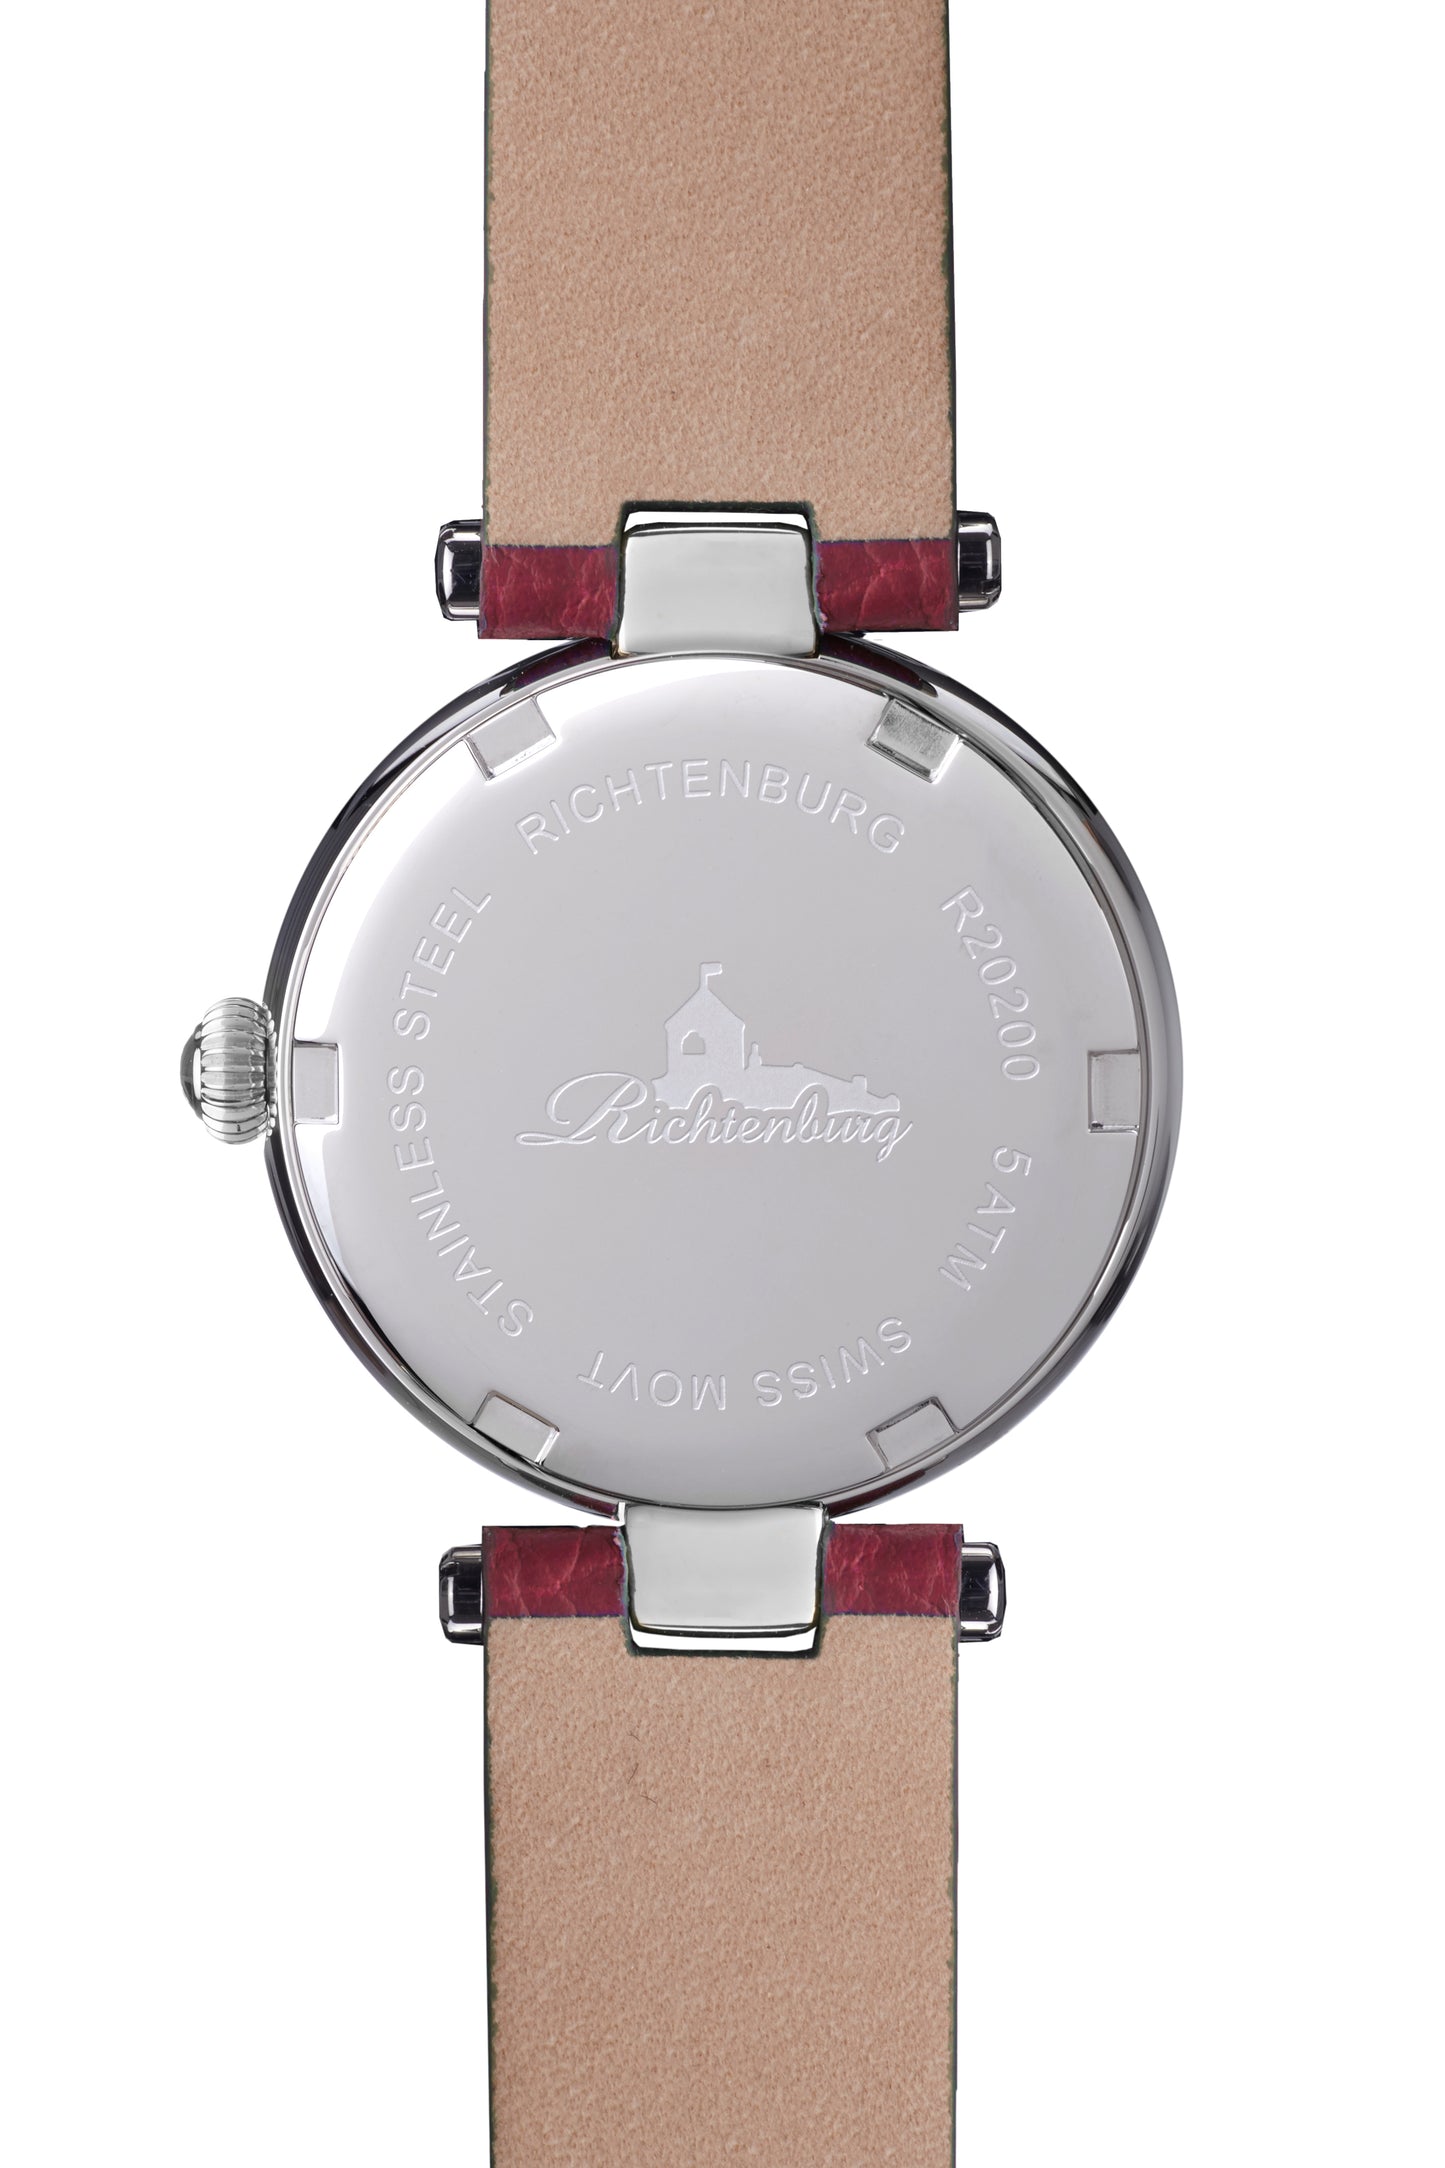 Automatic watches — Vivana — Richtenburg — steel silver red